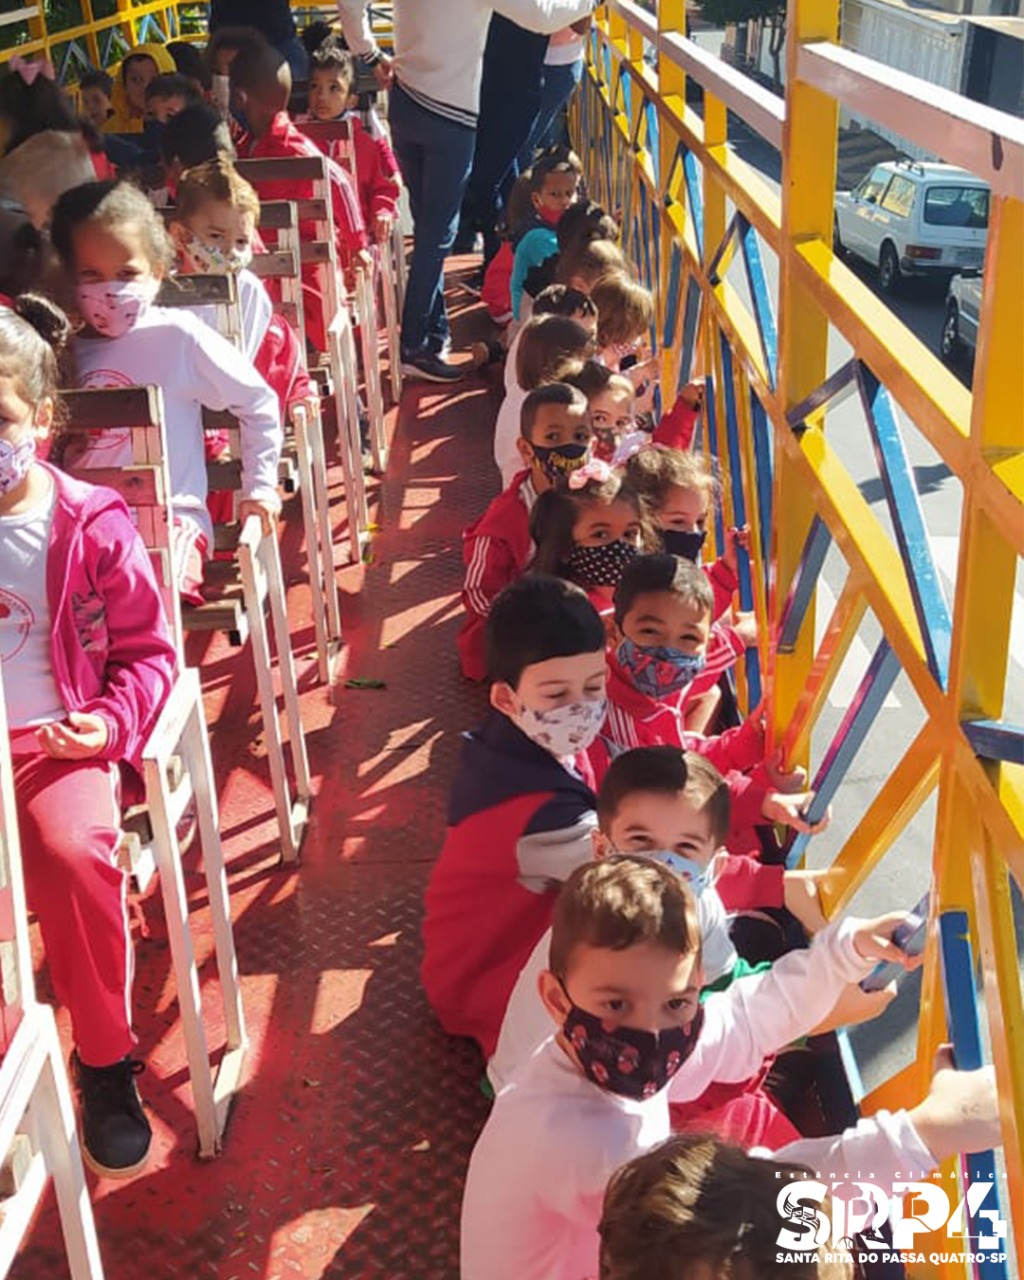 Carreta da Alegria atrai crianças e famílias patenses para a praça central  da cidade